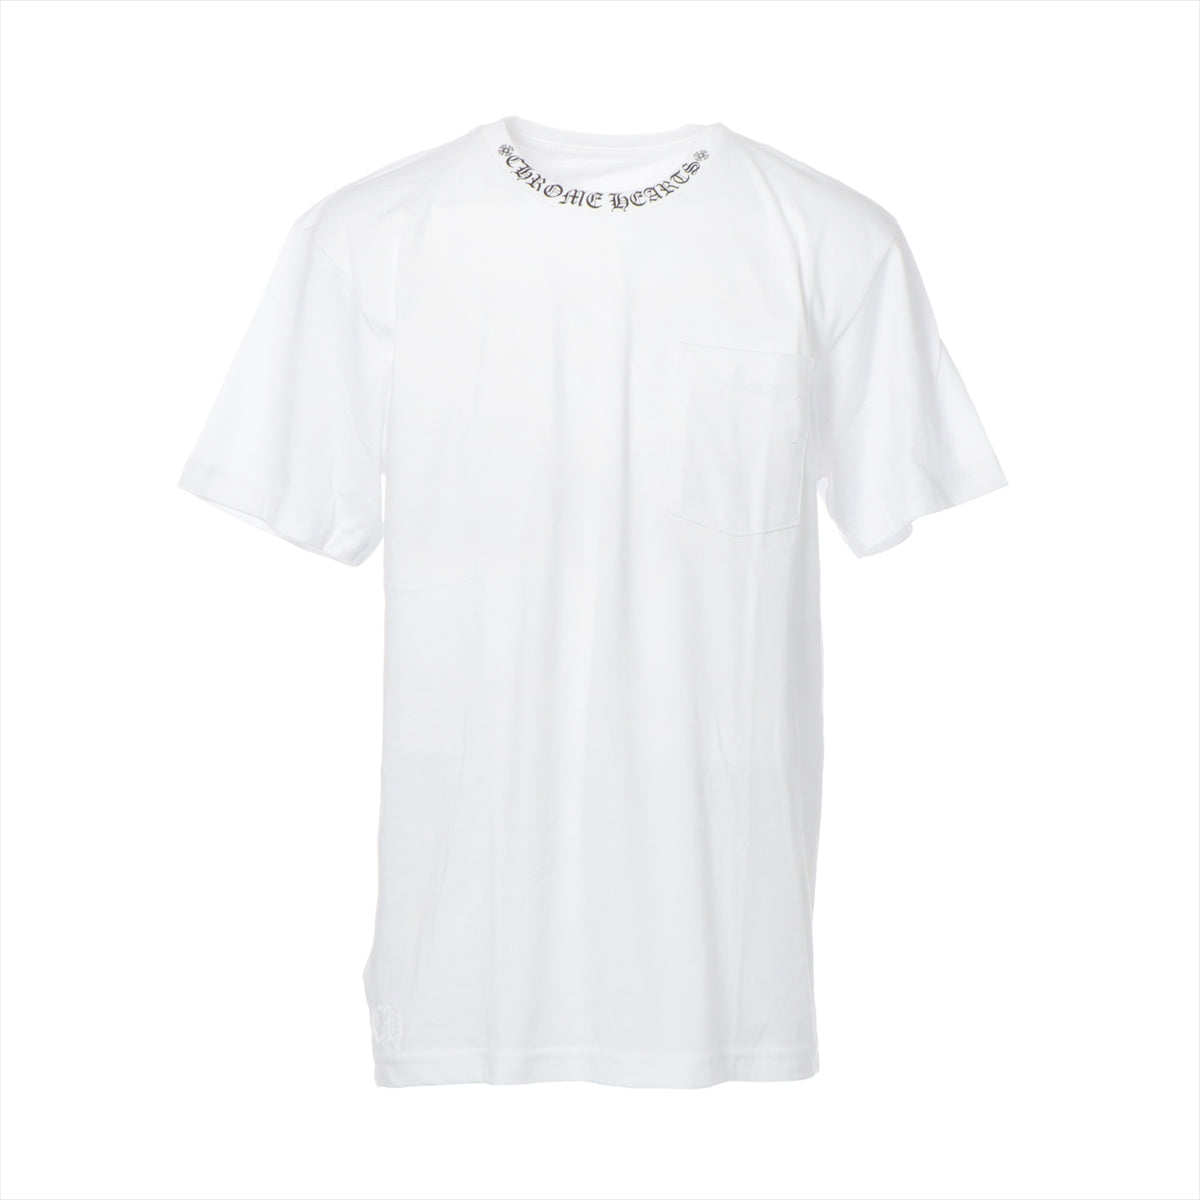 クロムハーツ Tシャツ コットン サイズL ホワイト ネックロゴ